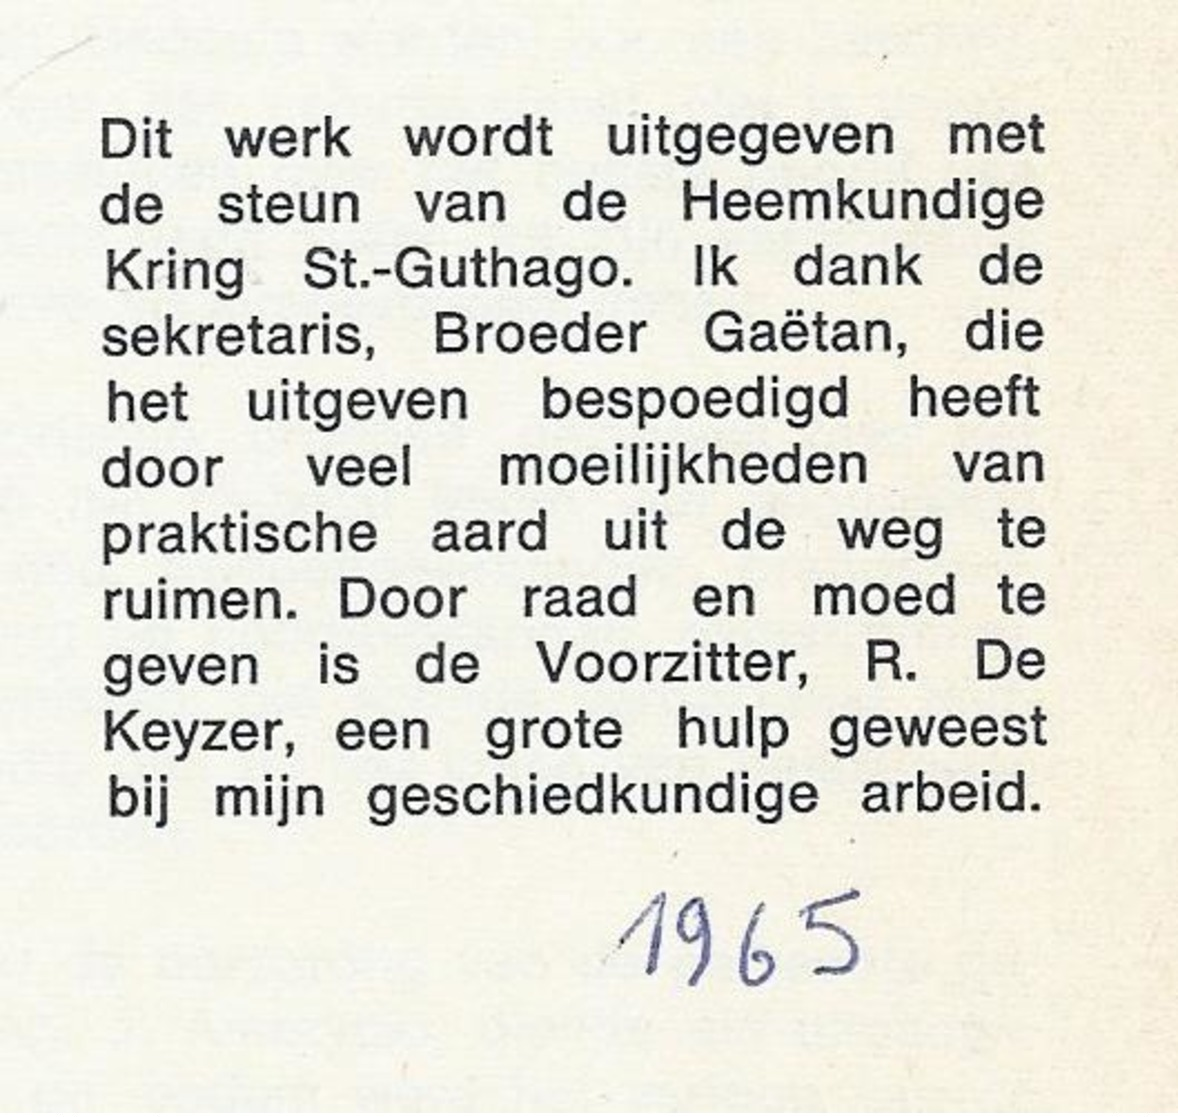 1965 KOUDEKERKE - HEIST M. COORNAERT TOPOGRAFIE... BEVAT 4 UITVOUWBARE KAARTEN - BIJGEVOEGD: KRANTEKNIPSEL 1968 - Geschiedenis